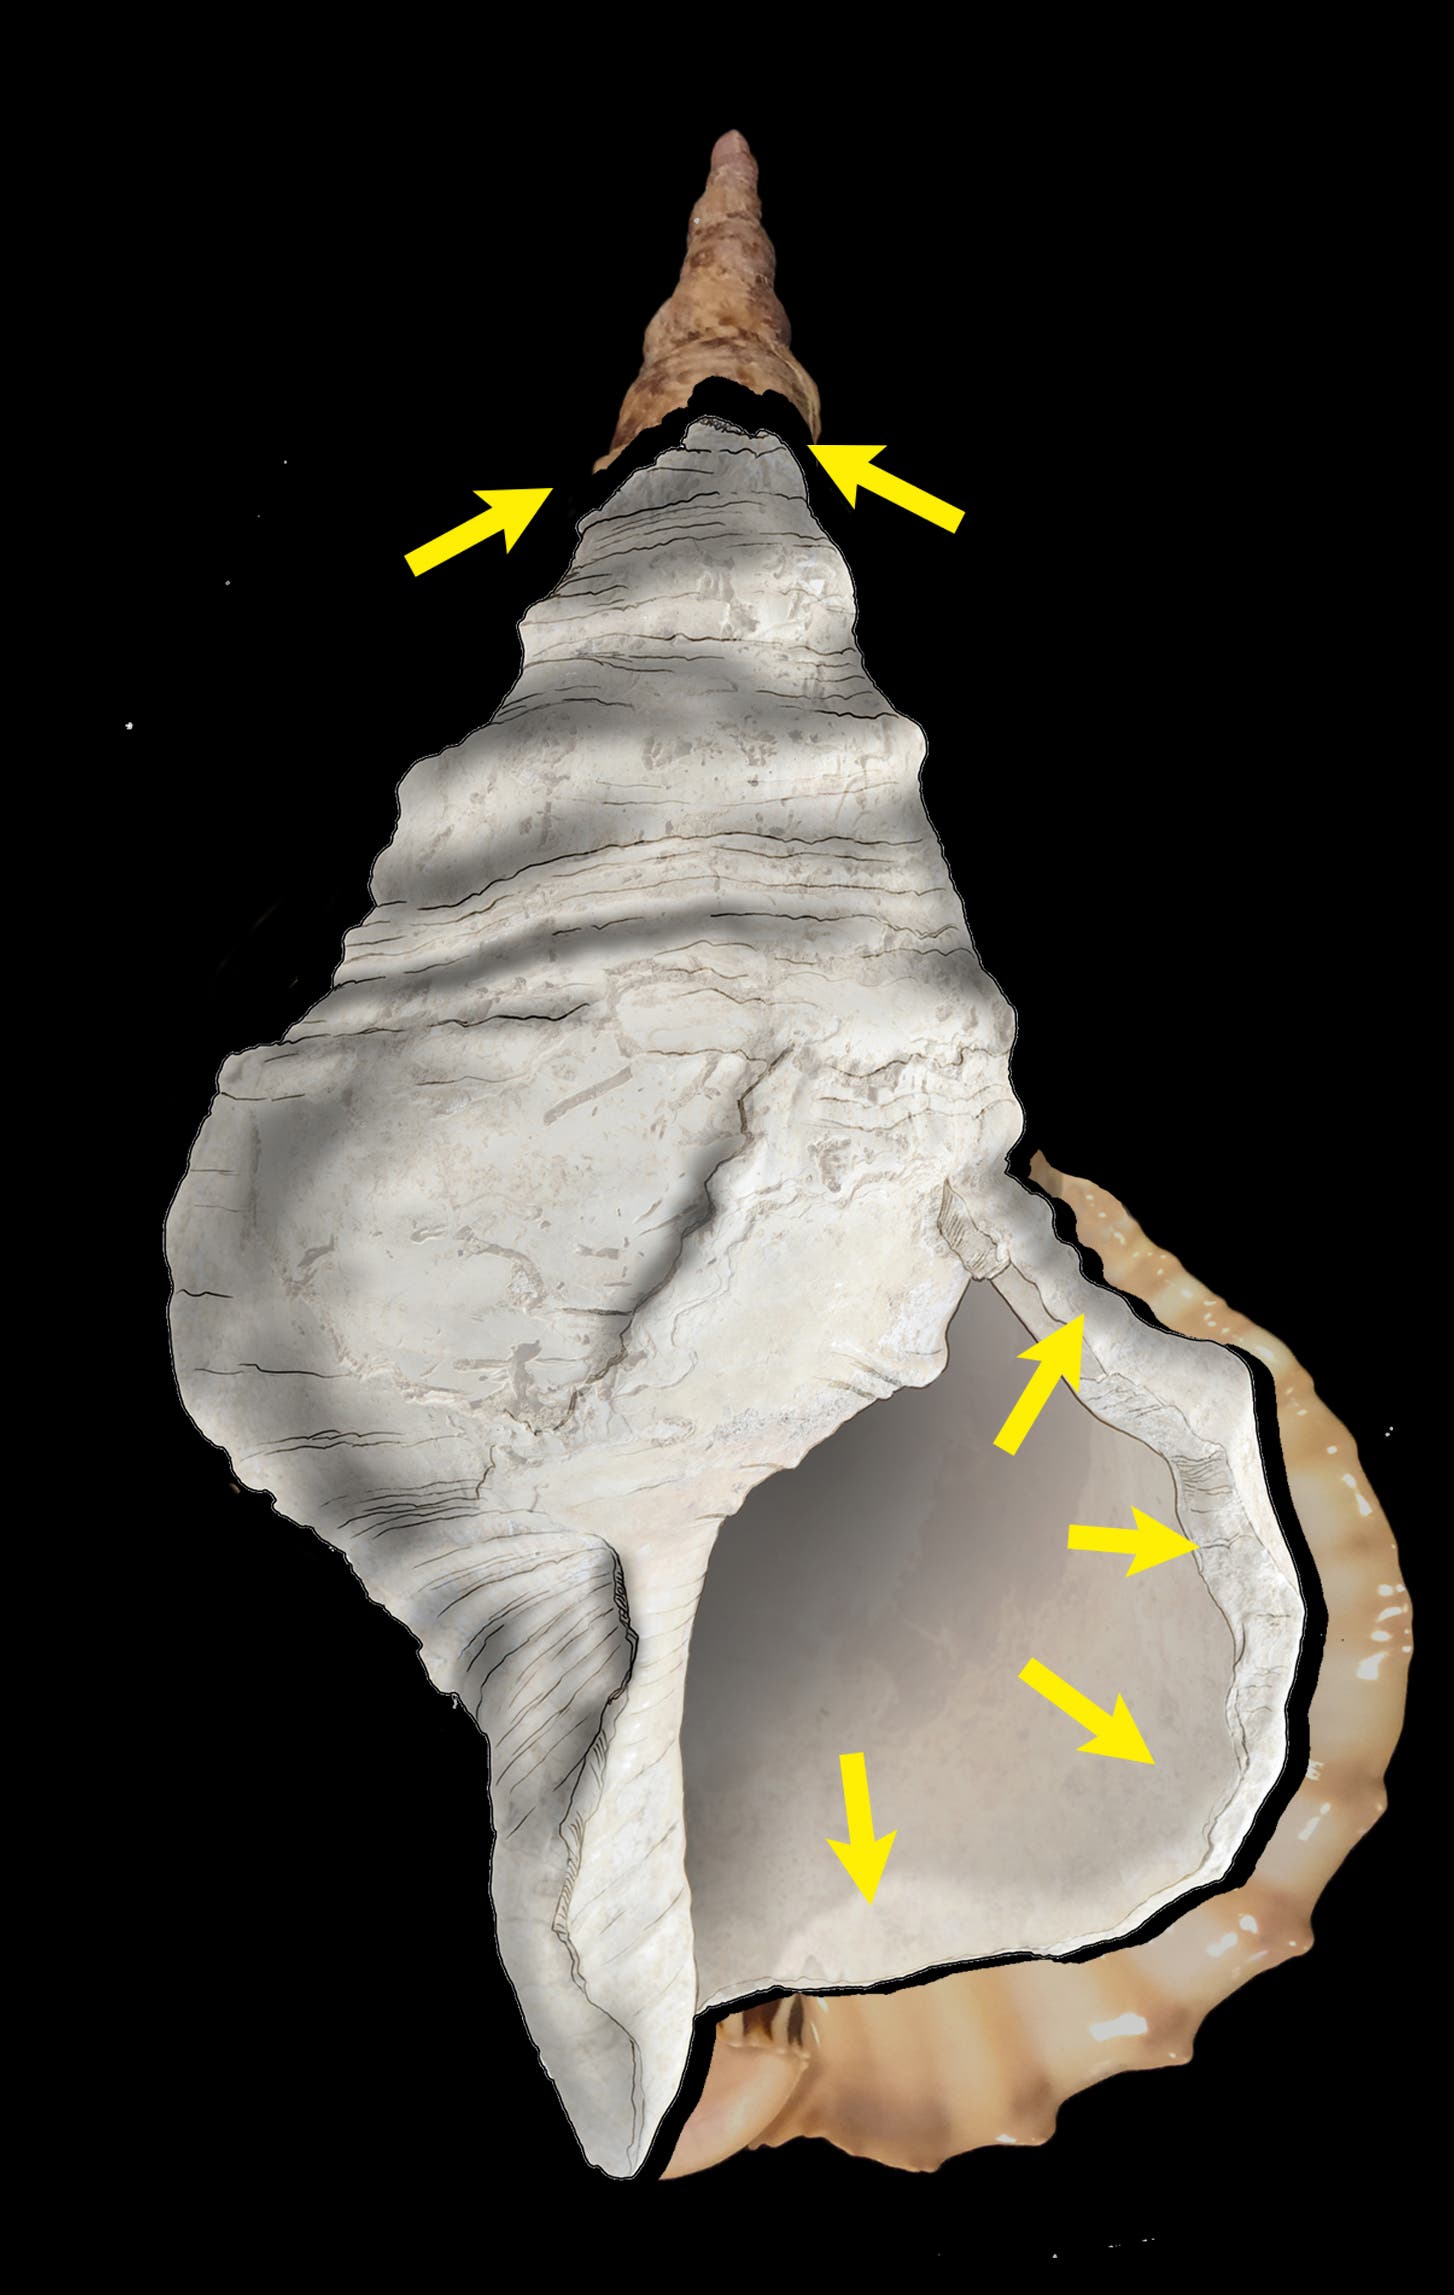 Die Schale zeigt Spuren wichtiger Modifikationen menschlichen Ursprungs: Erstens die Beseitigung des Labrums durch eine Reihe von Schlägen und zweitens die Öffnung des Apex durch Zerstörung der ersten sechs Spires.